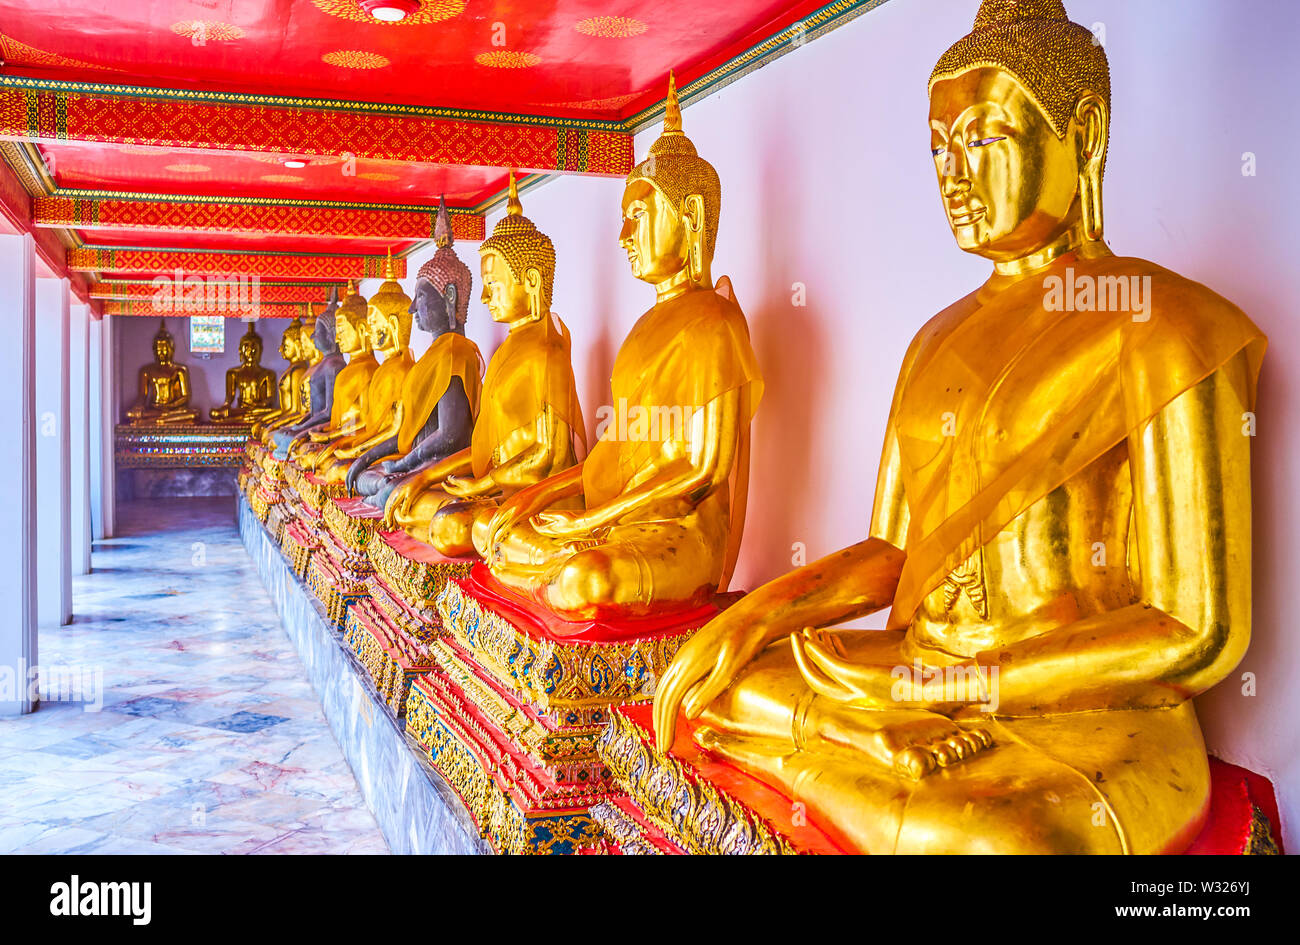 BANGKOK, THAILAND - 22. APRIL 2019: Die Linie der goldenen Statuen des Buddha in überdachten Galerie von Phra Rabiang Kloster Wat Pho temle, am 2. April Stockfoto